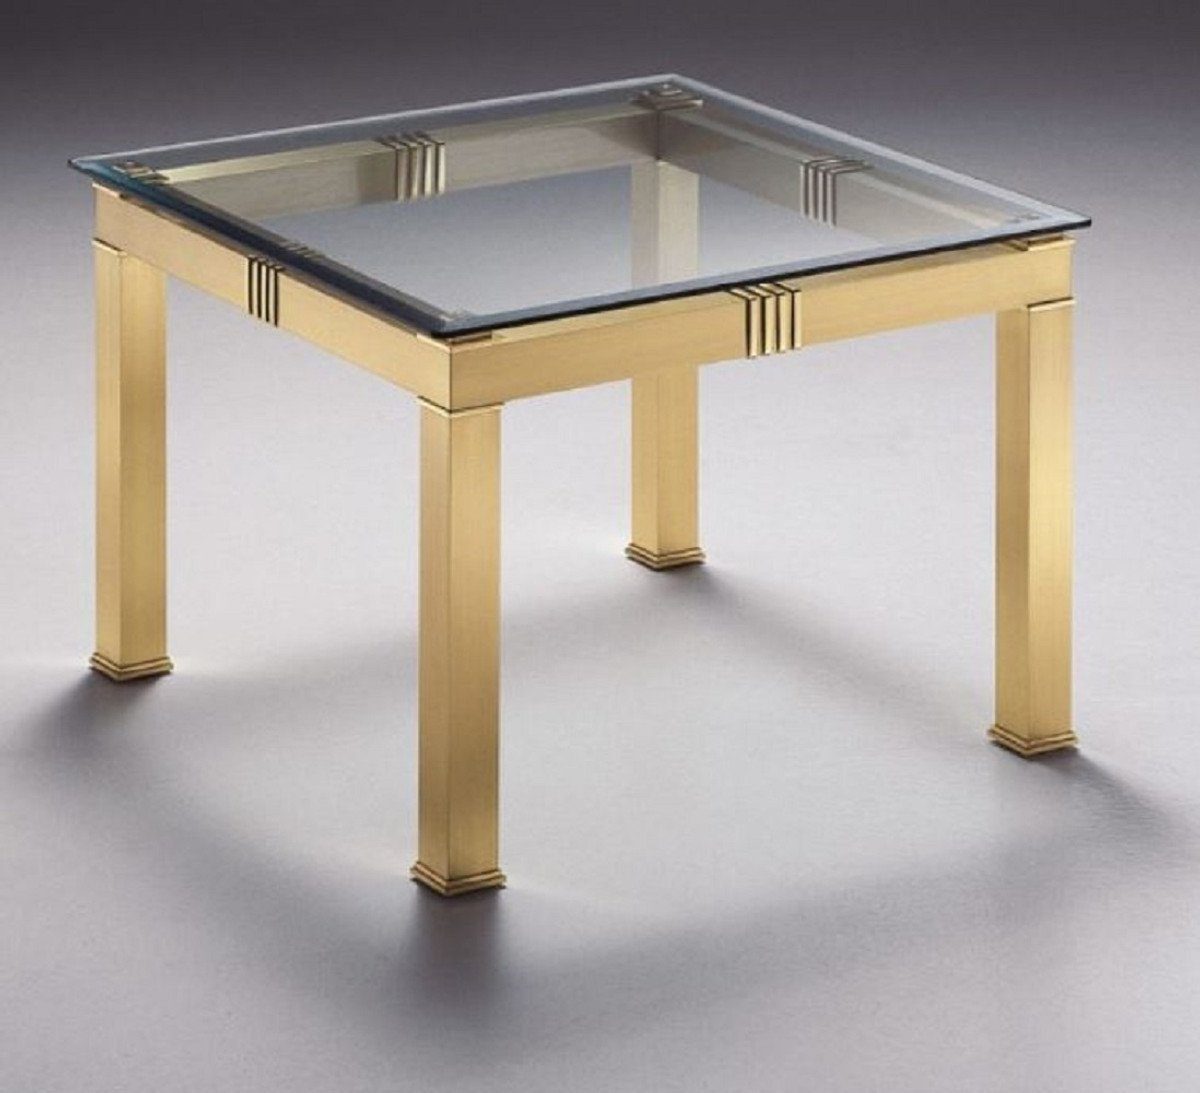 Casa Padrino Beistelltisch Luxus Beistelltisch Messingfarben 70 x 70 x H. 48 cm - Quadratischer Messing Tisch mit Glasplatte - Luxus Möbel